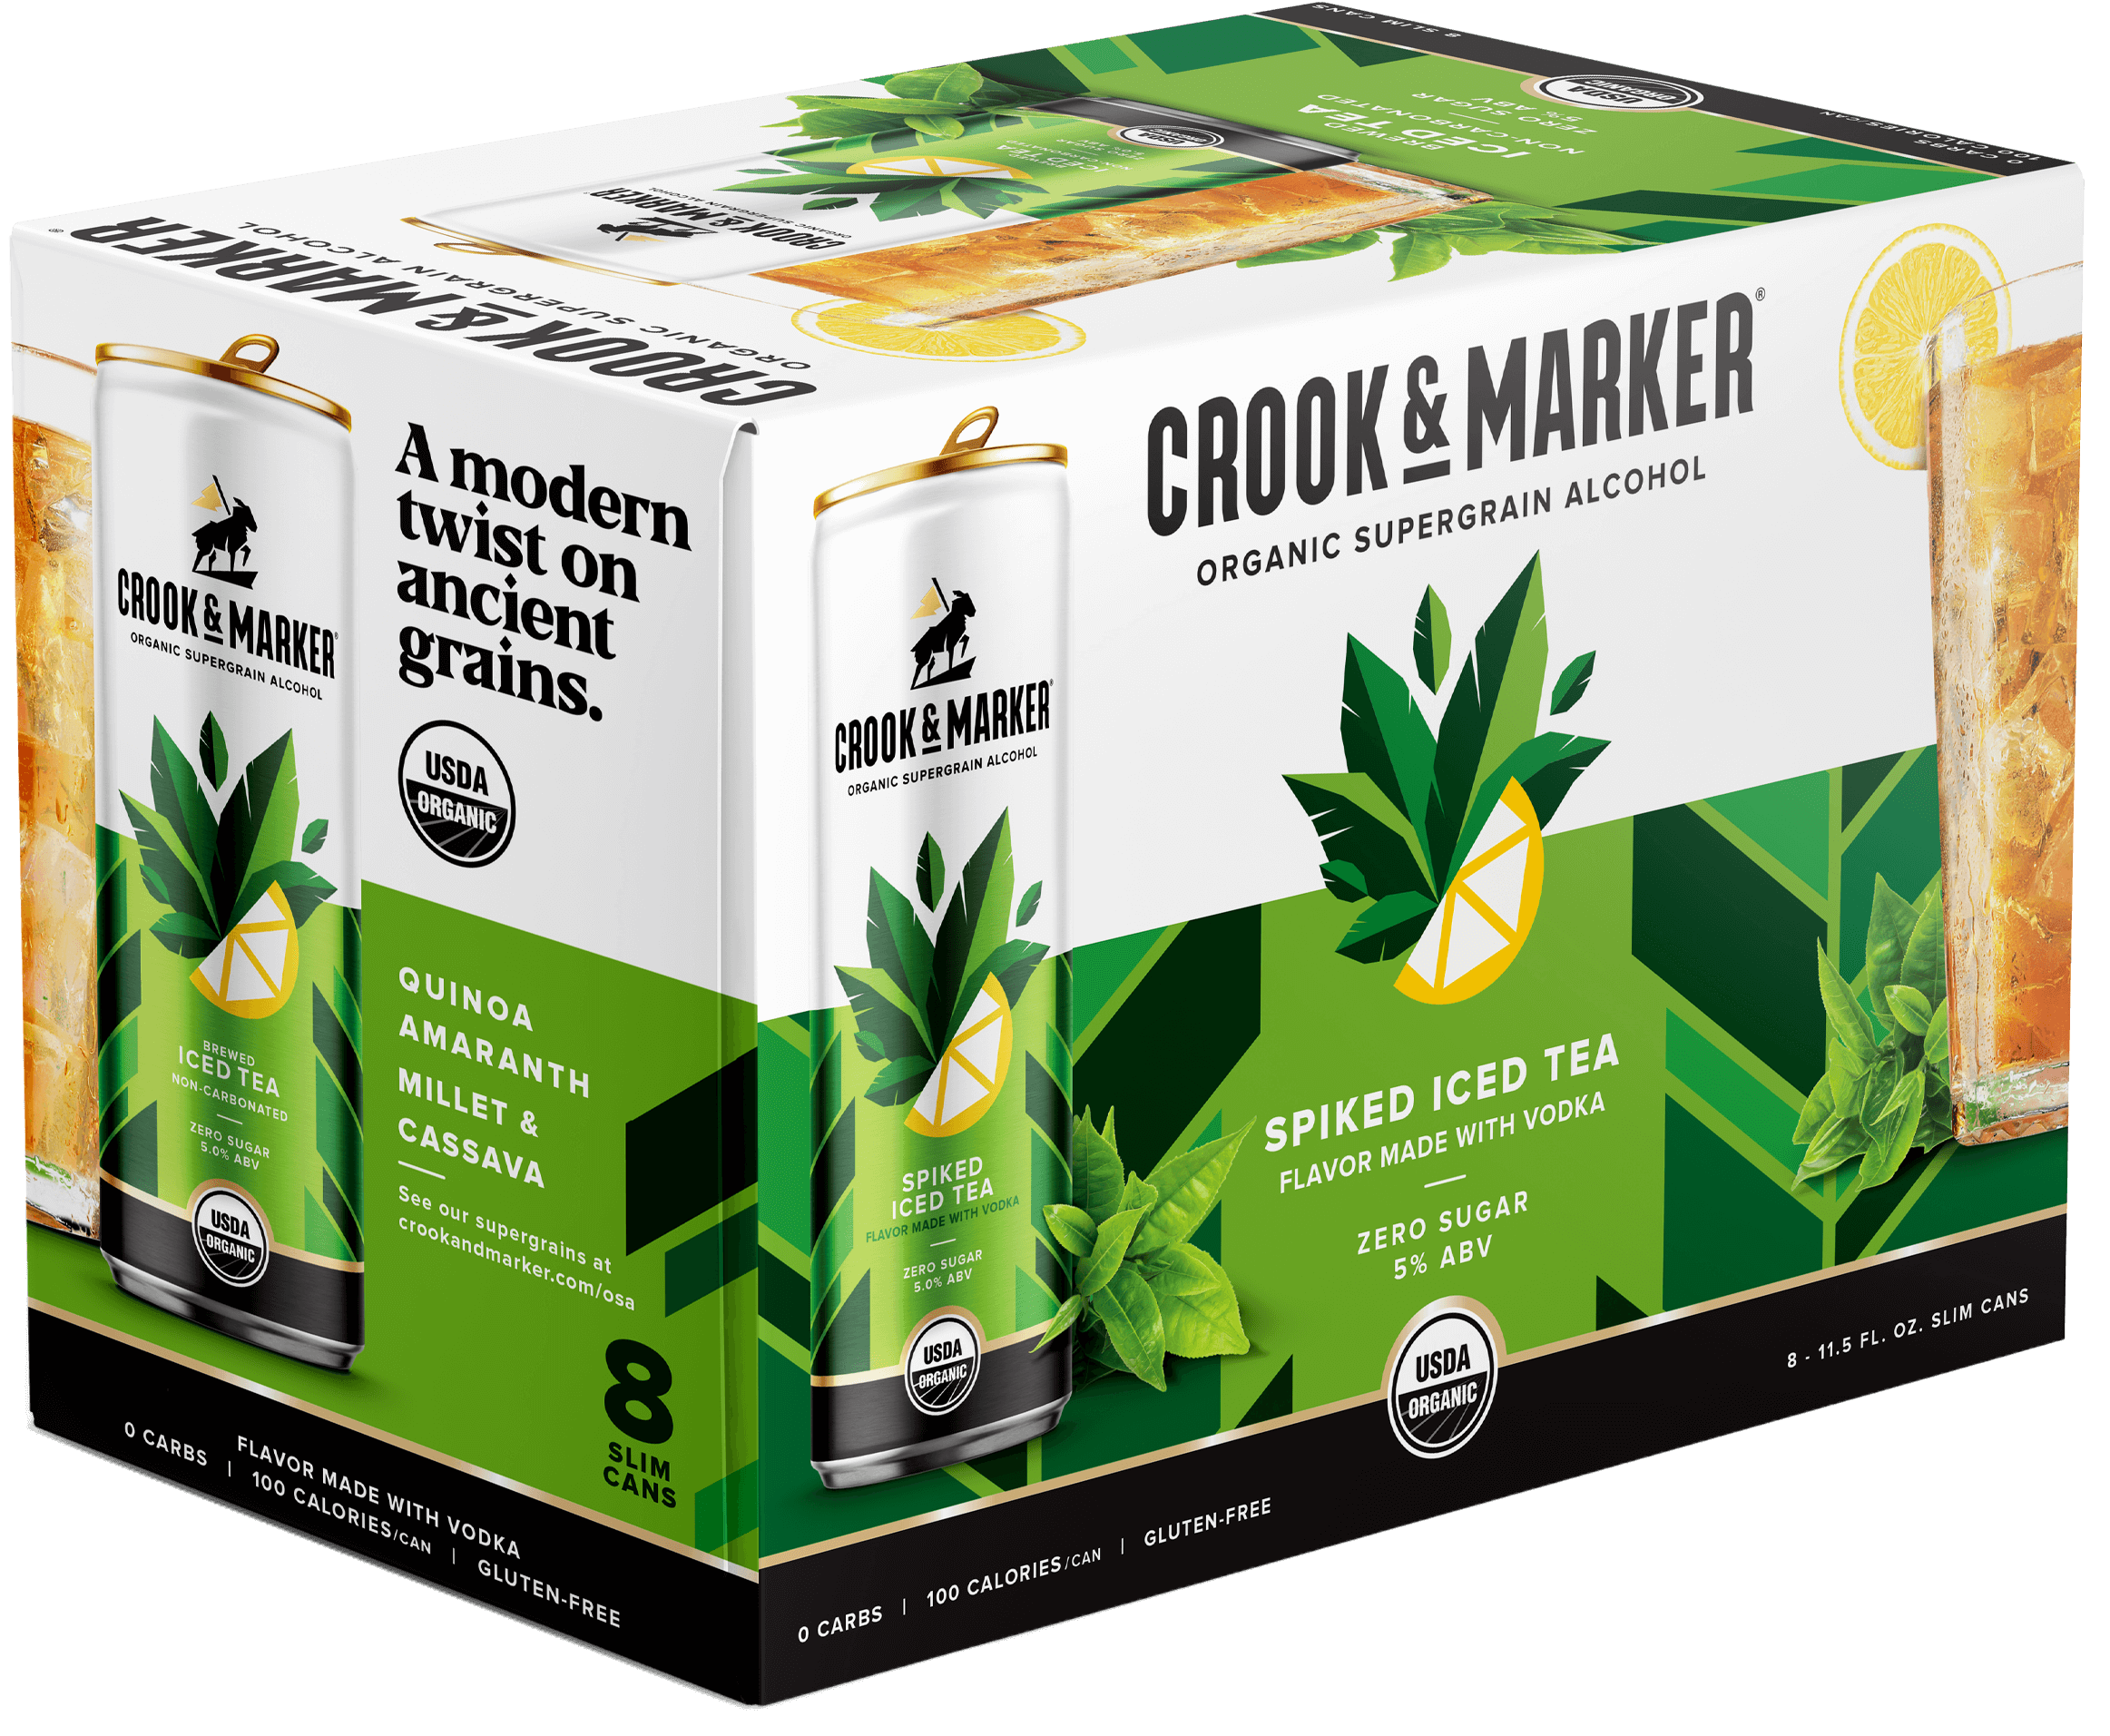 Crook & Marker - Spiked Iced Tea Box